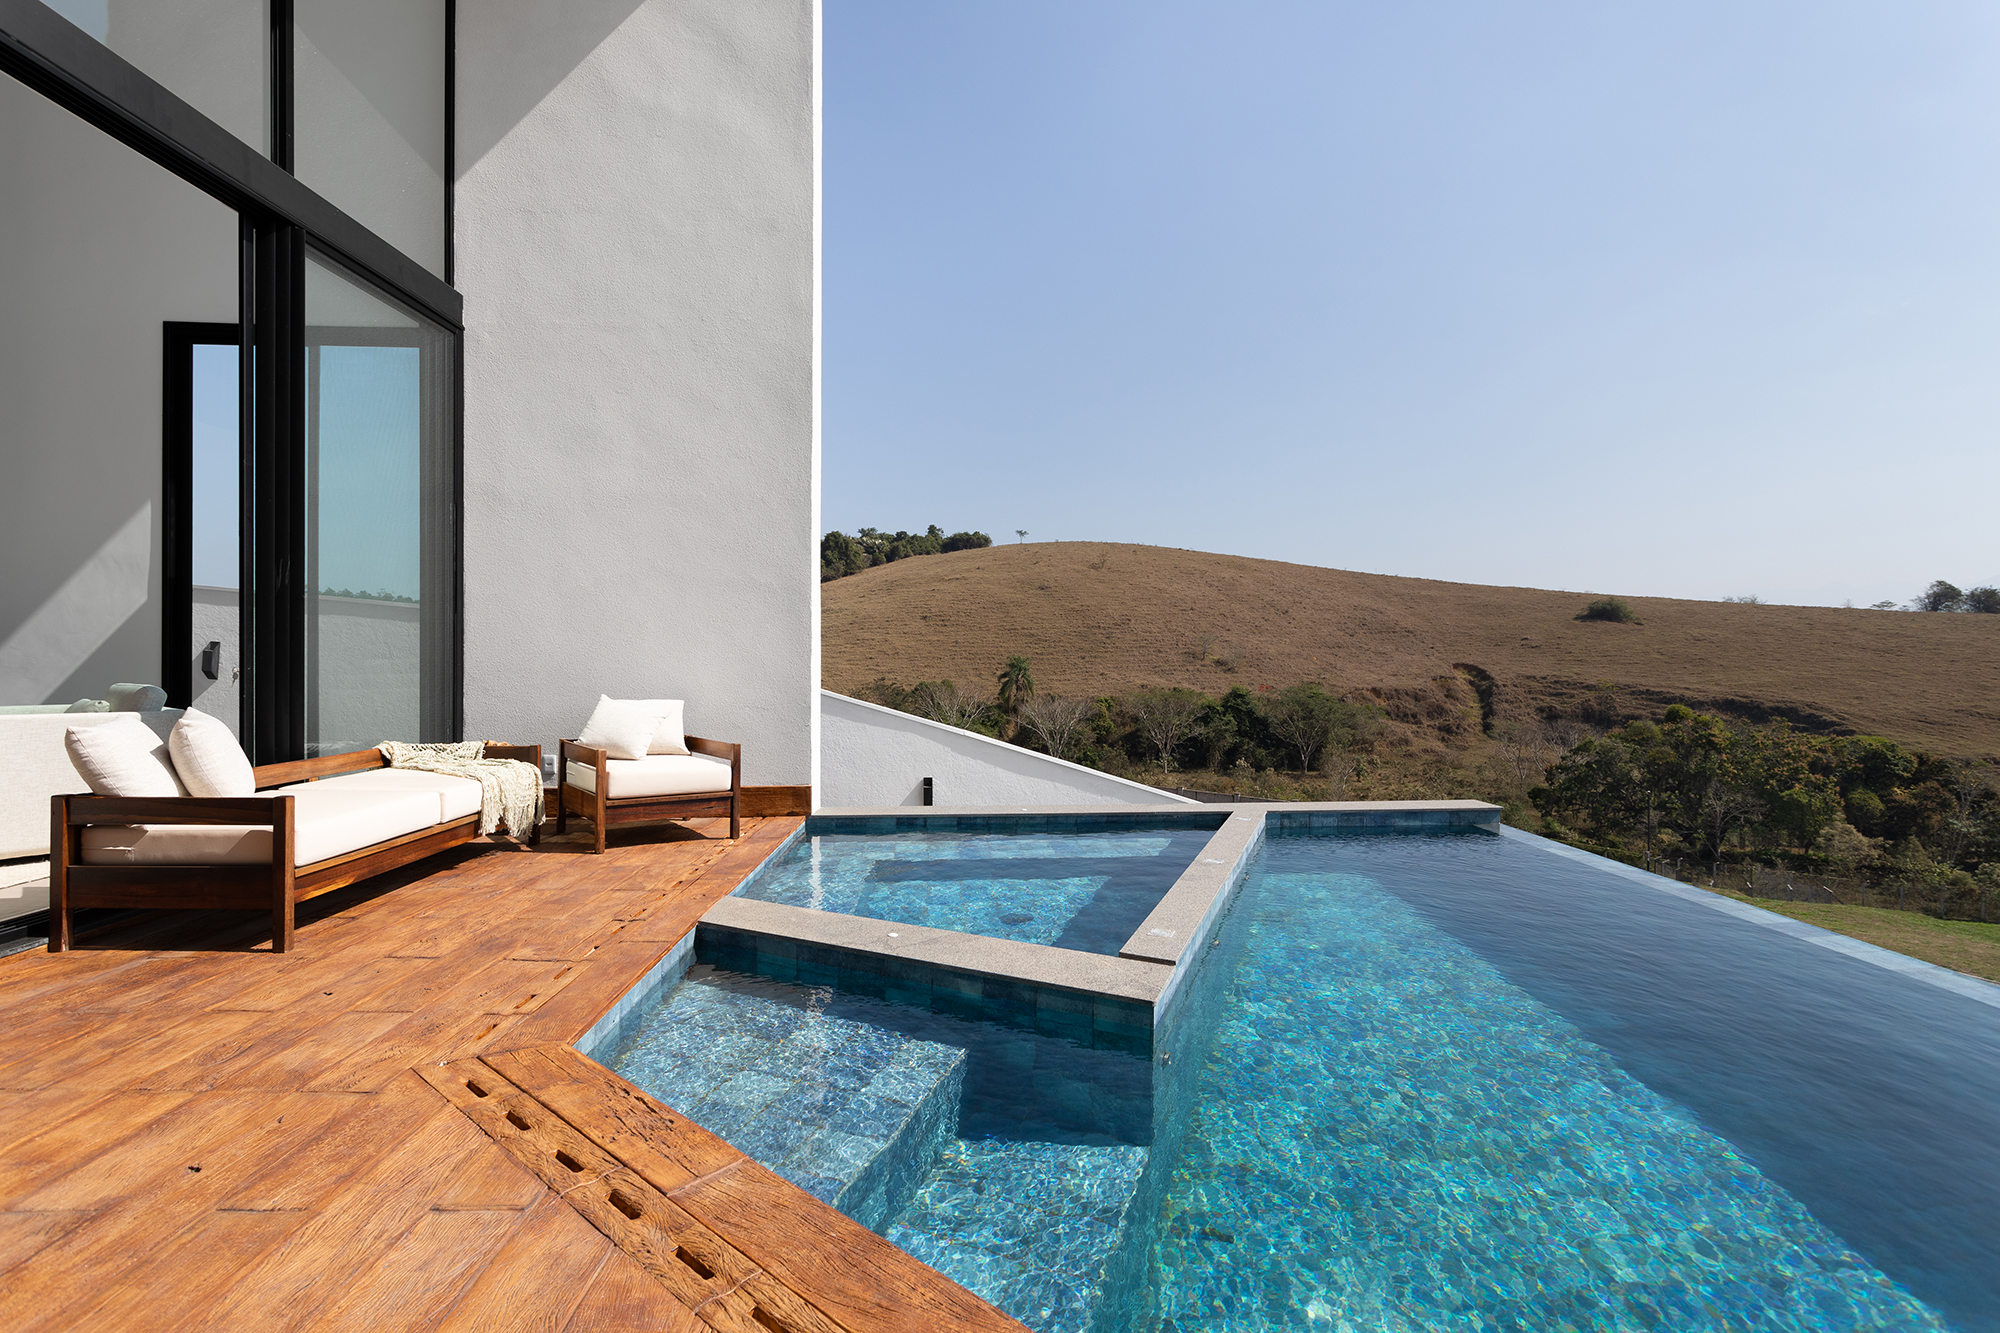 Casa de 435 m² com vista para a Serra possui piscina em formato diagonal. Projeto de Vivi Cirello. Na foto, piscina com vista para a serra.